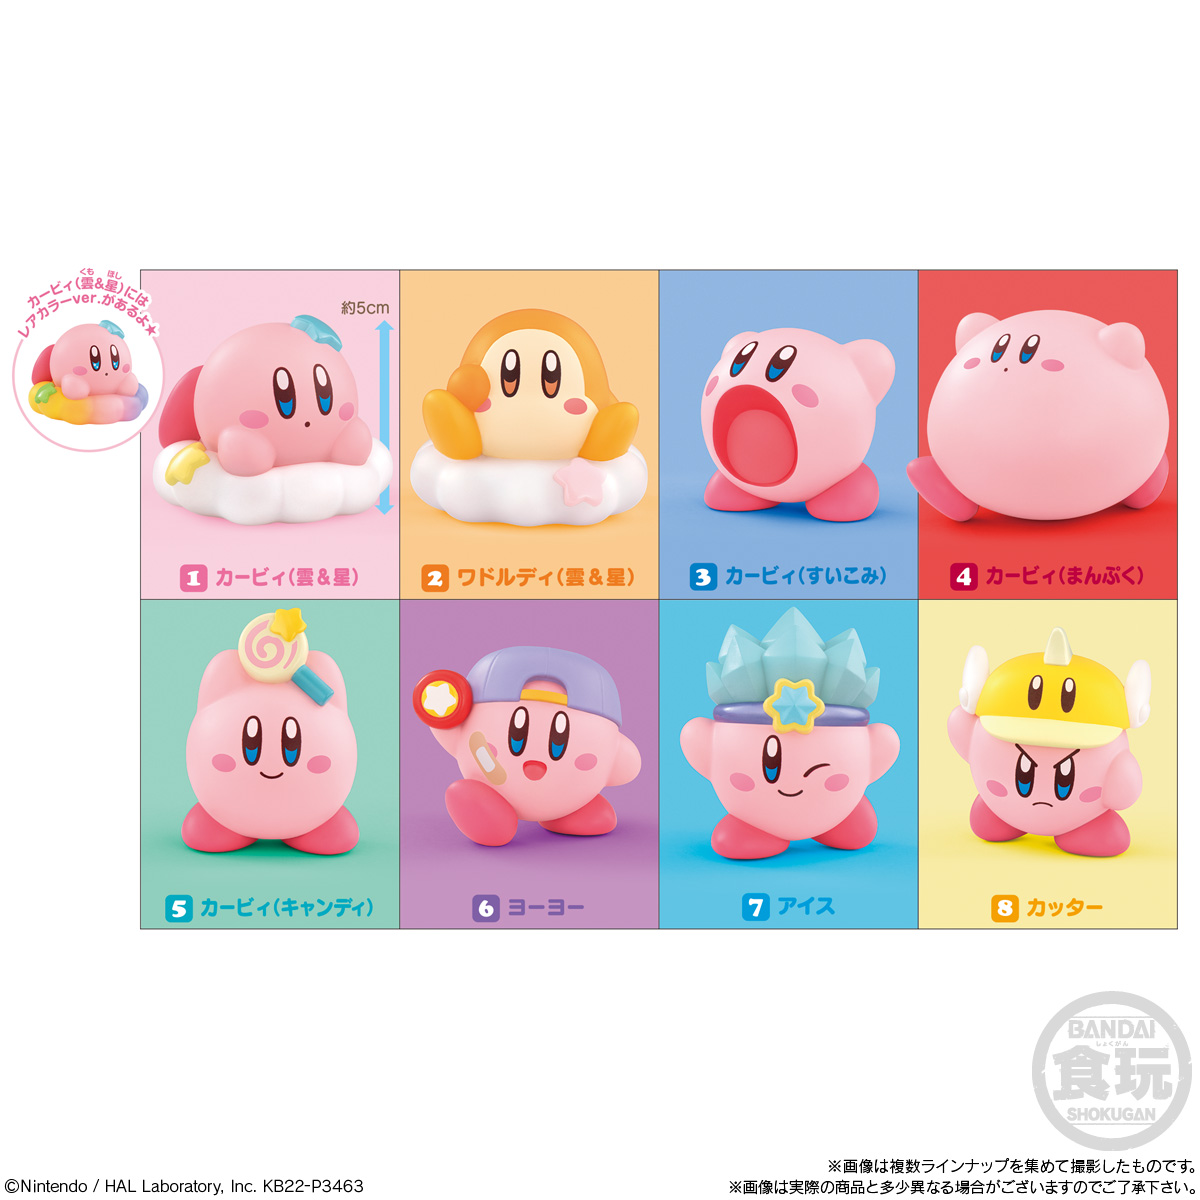 可愛くて癒されるてのりサイズの食玩フィギュア「星のカービィ Kirby